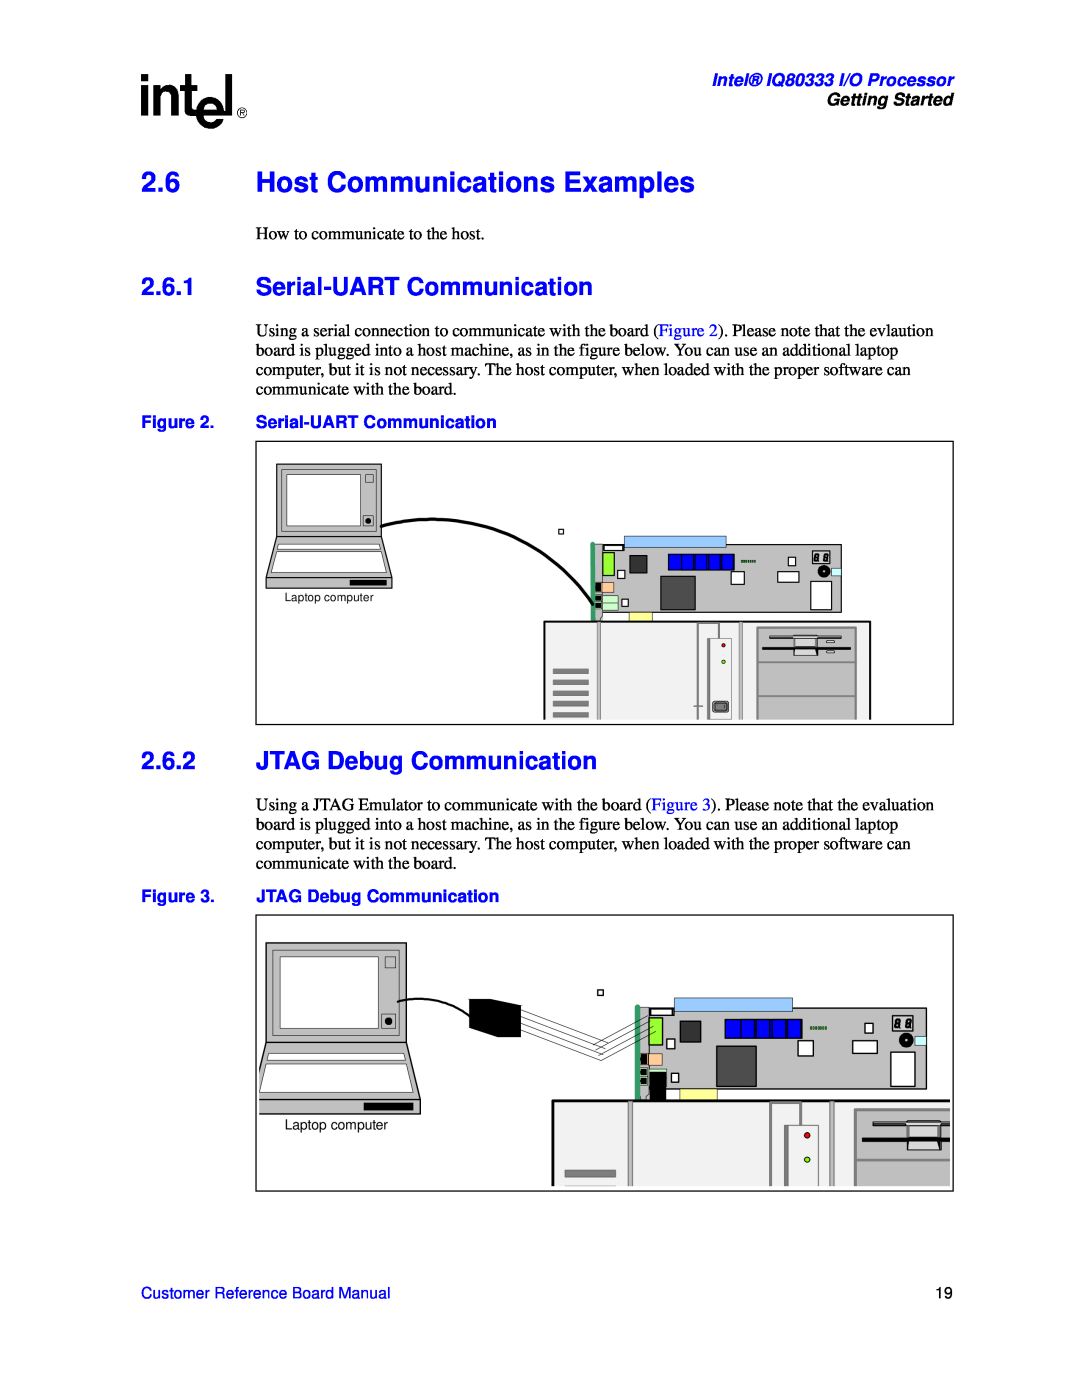 Intel IQ80333 manual 2.6Host Communications Examples, 2.6.1Serial-UARTCommunication, 2.6.2JTAG Debug Communication 